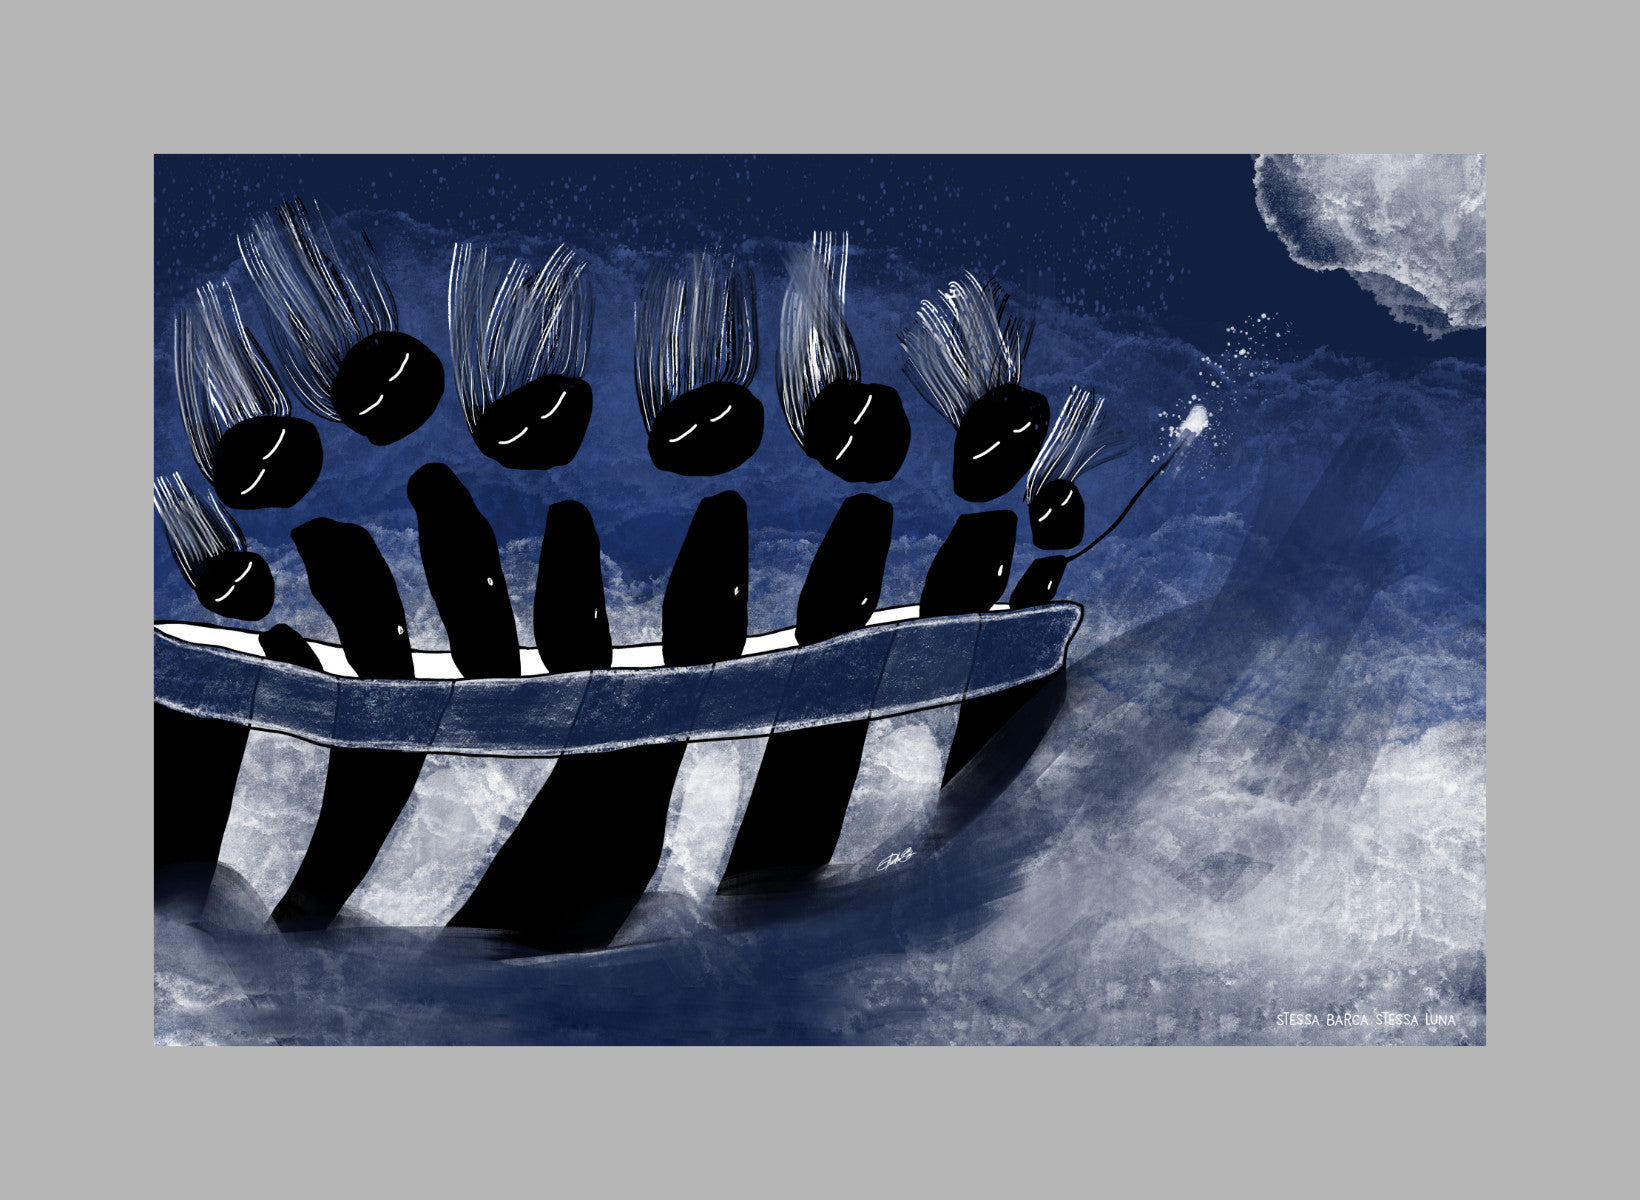 Stessa barca stessa luna - Grafica digitale su magnete